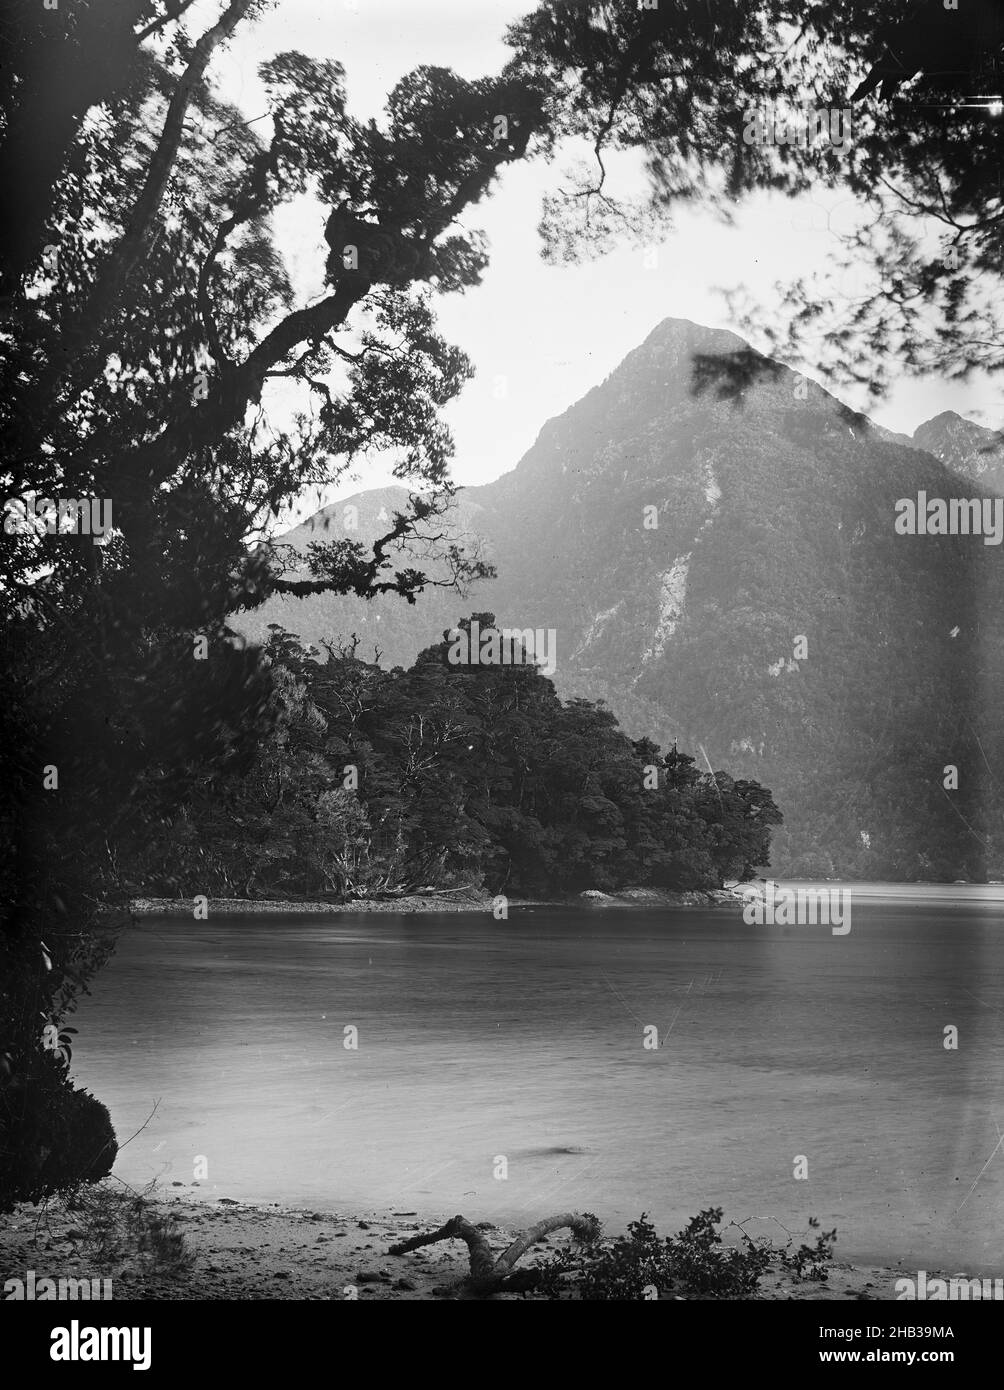 [Caswell Sound], Burton Brothers Studio, Fotostudio, Neuseeland, Schwarz-Weiß-Fotografie, Spitzer Berg, überhängender Baum Stockfoto